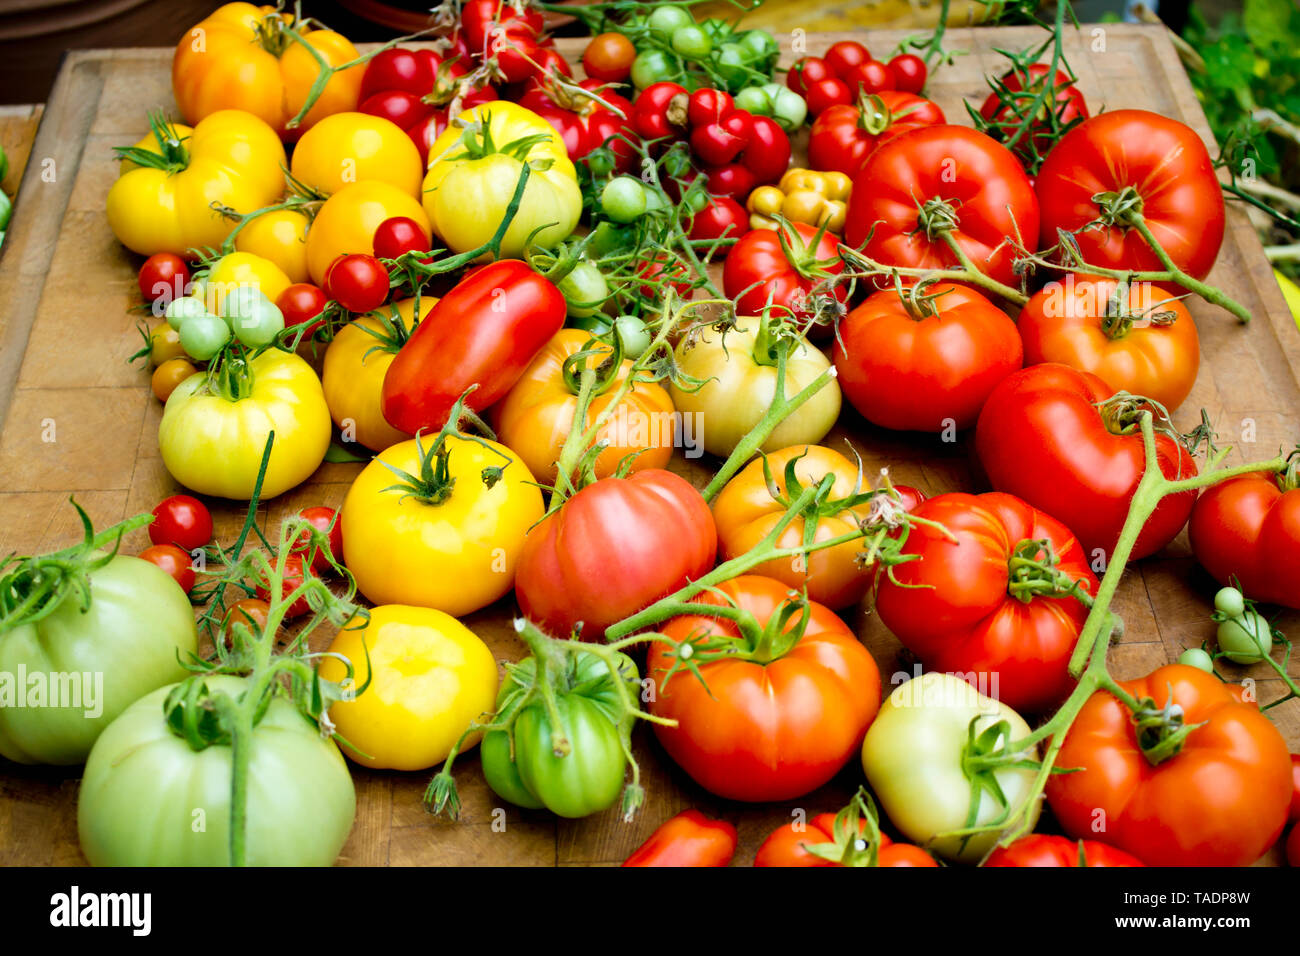 Pile of various tomato sorts Stock Photo